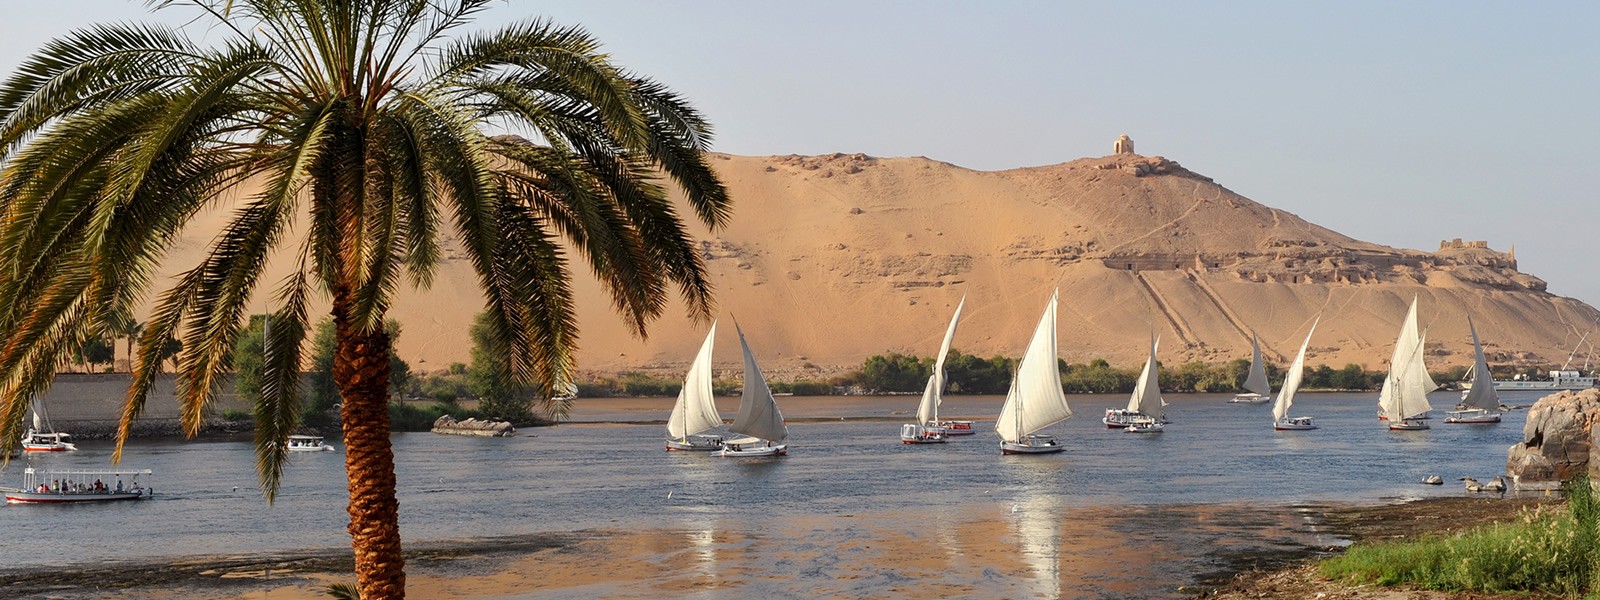 Cairo - Aswan - Luxor - Hurghada - Cairo